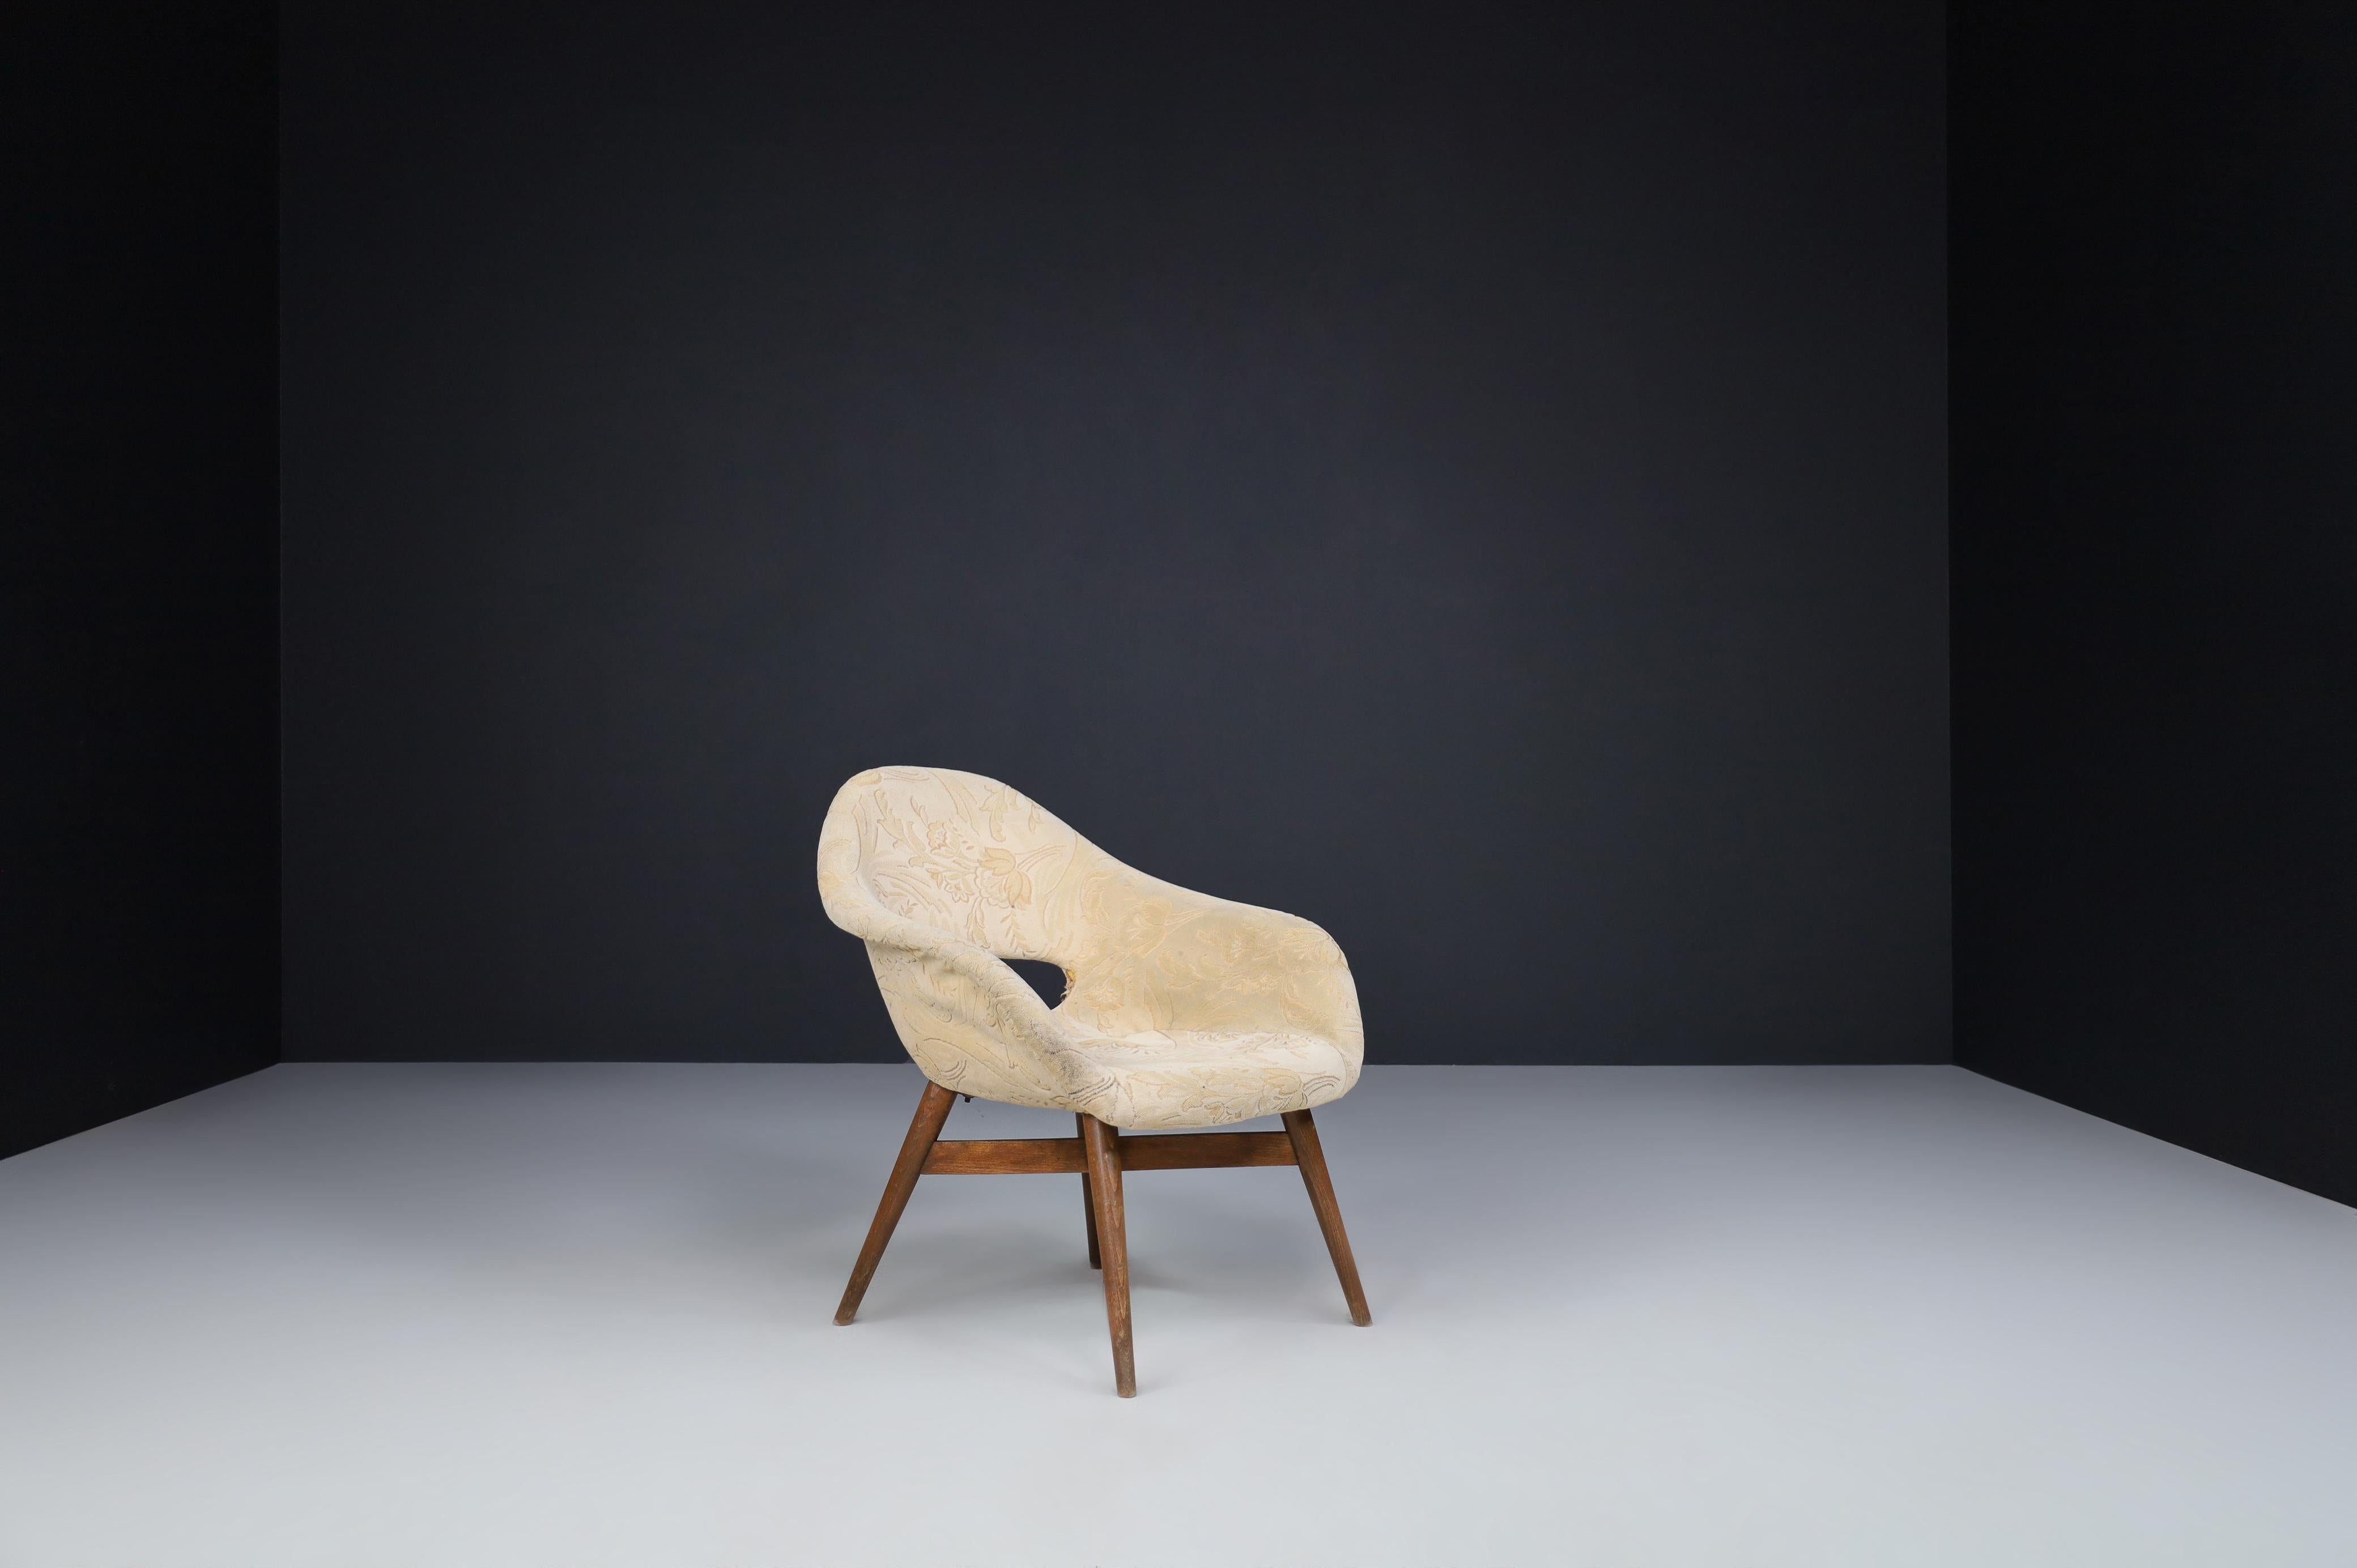 Fauteuils Miroslav Navratil en tissu original 1960.

Joli ensemble de deux fauteuils de Miroslav Navratil, fabriqués en République tchèque par Cesky Nabytek vers 1960. Ces chaises ont une base en contreplaqué de hêtre brun et une coque en fibre de